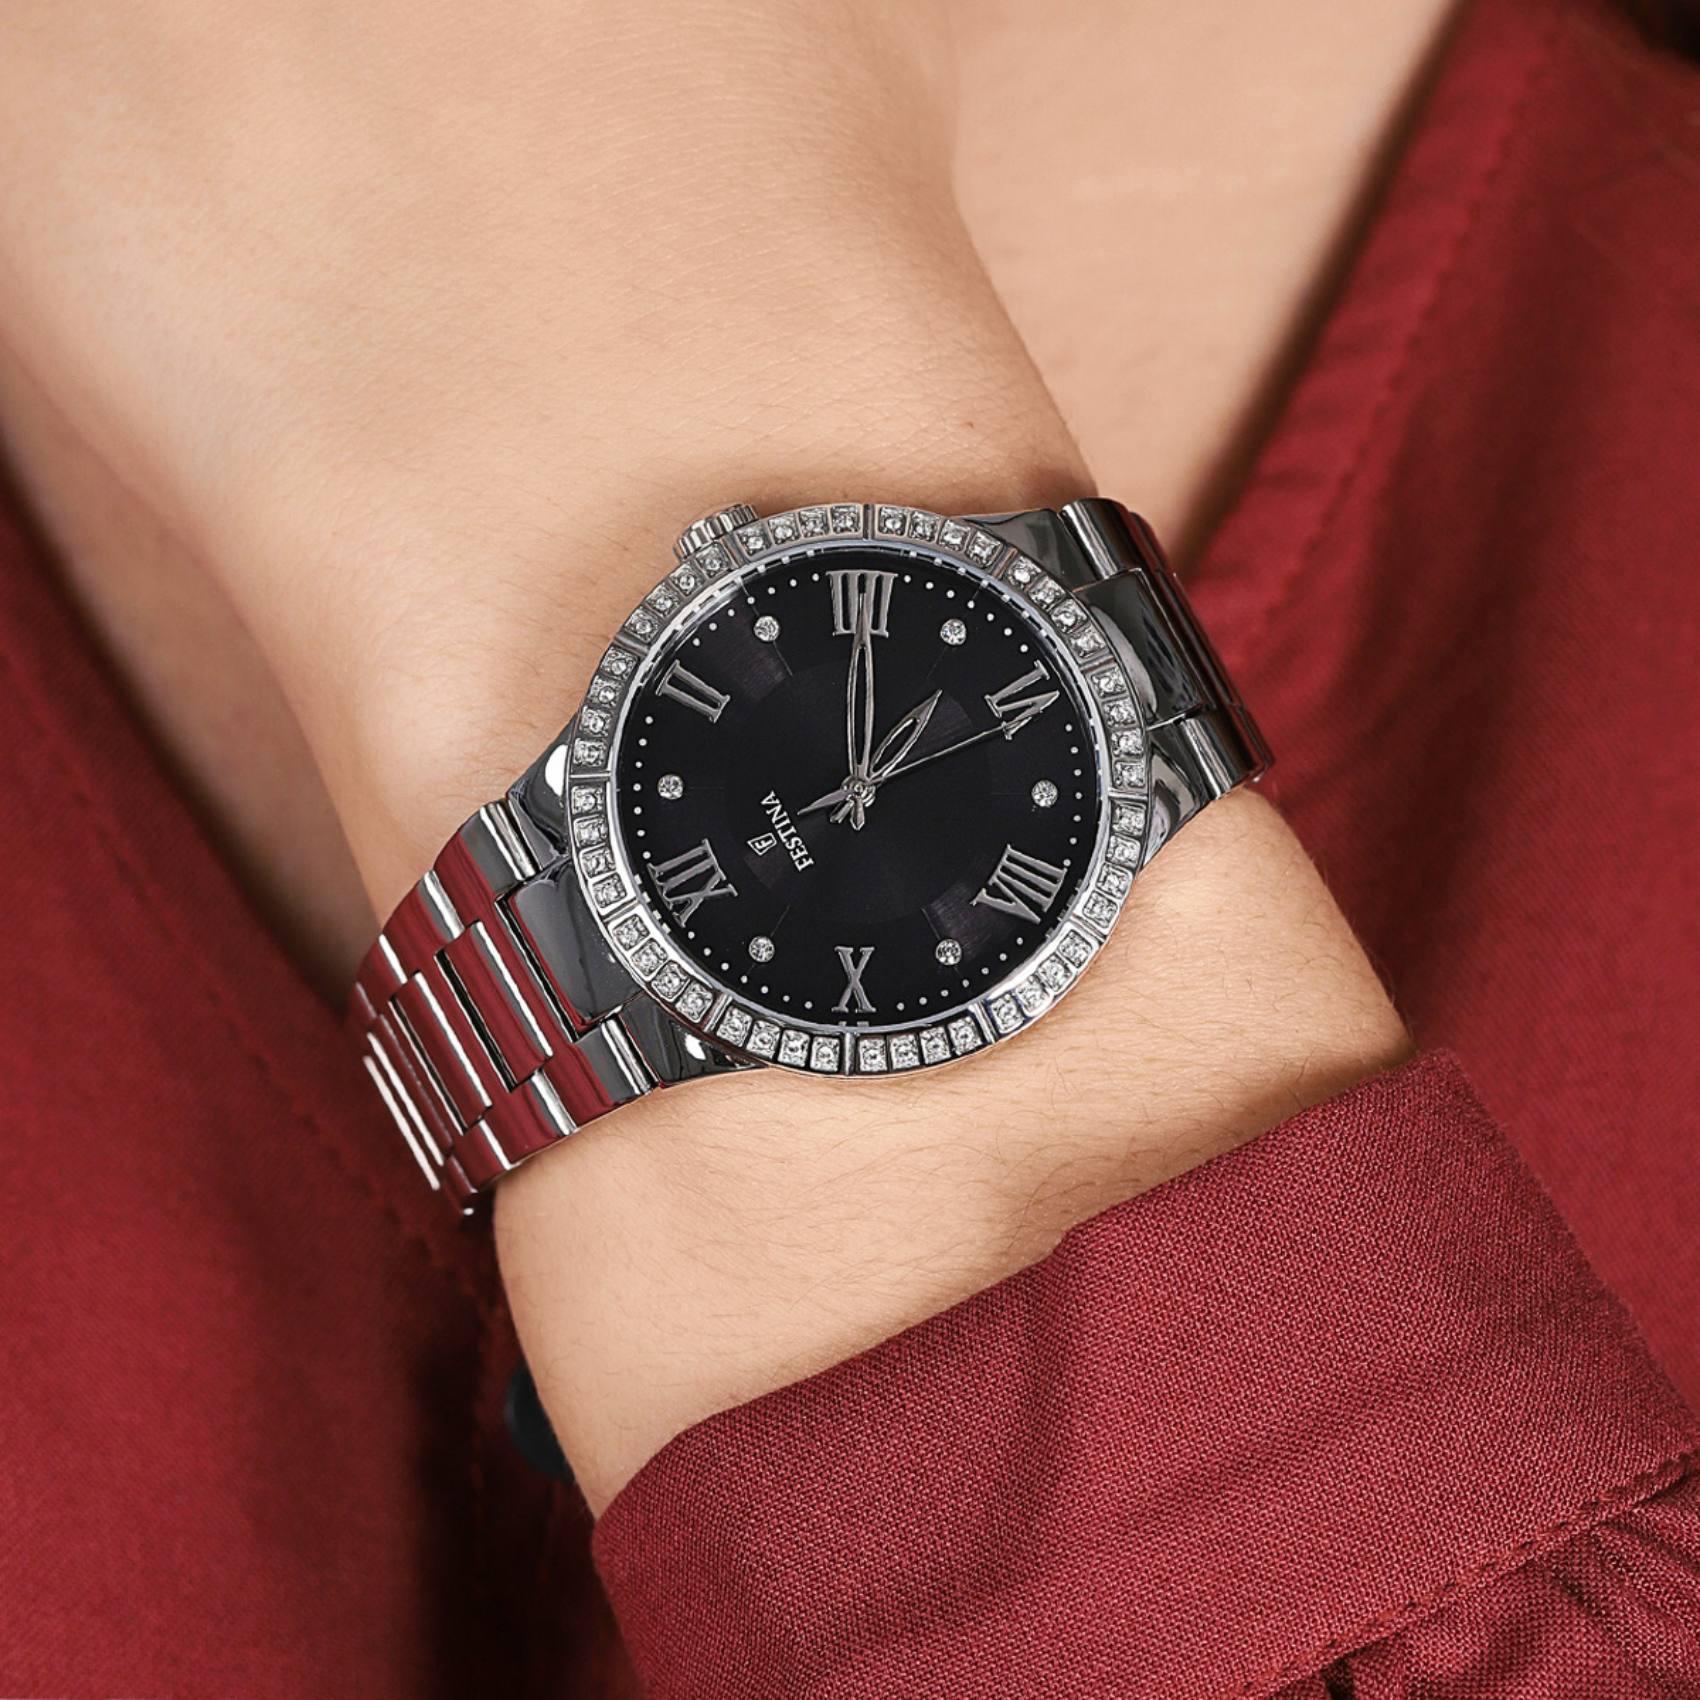 Γυναικείο ρολόι Festina Boyfriend F16719/2 με ασημί ατσάλινο μπρασελέ, μαύρο καντραν, μηχανισμό μπαταρίας, στρογγυλό στεφάνι με διάμετρο 36mm και ζιργκόν, αδιάβροχο στις 5ΑΤΜ-50Μ.